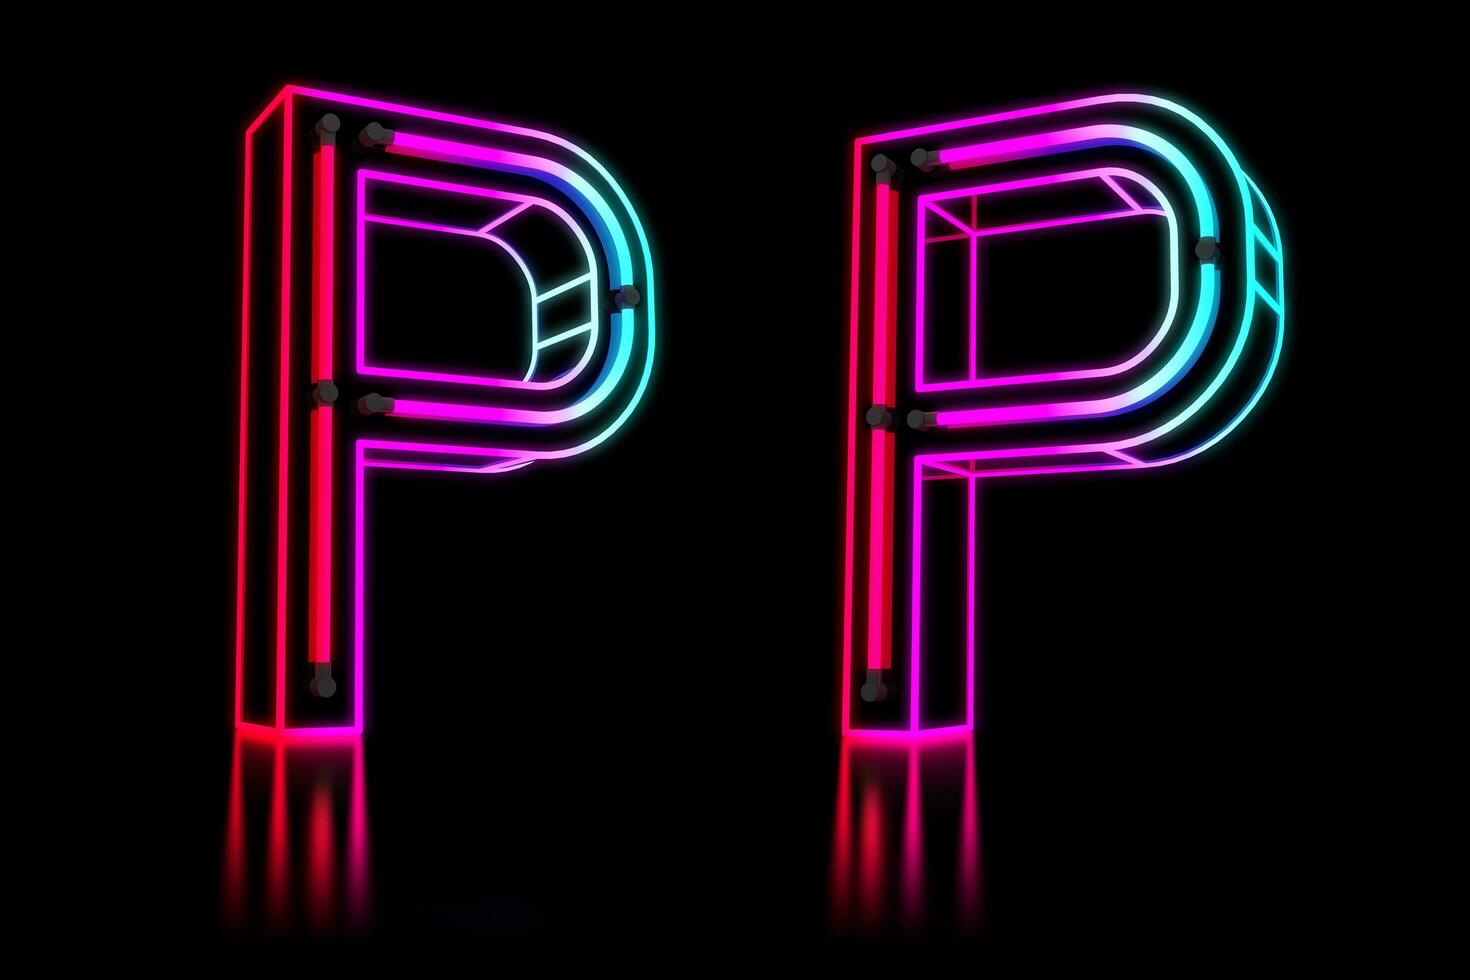 glühend bunt Neon- Alphabet. 3d Rendern Illustration foto